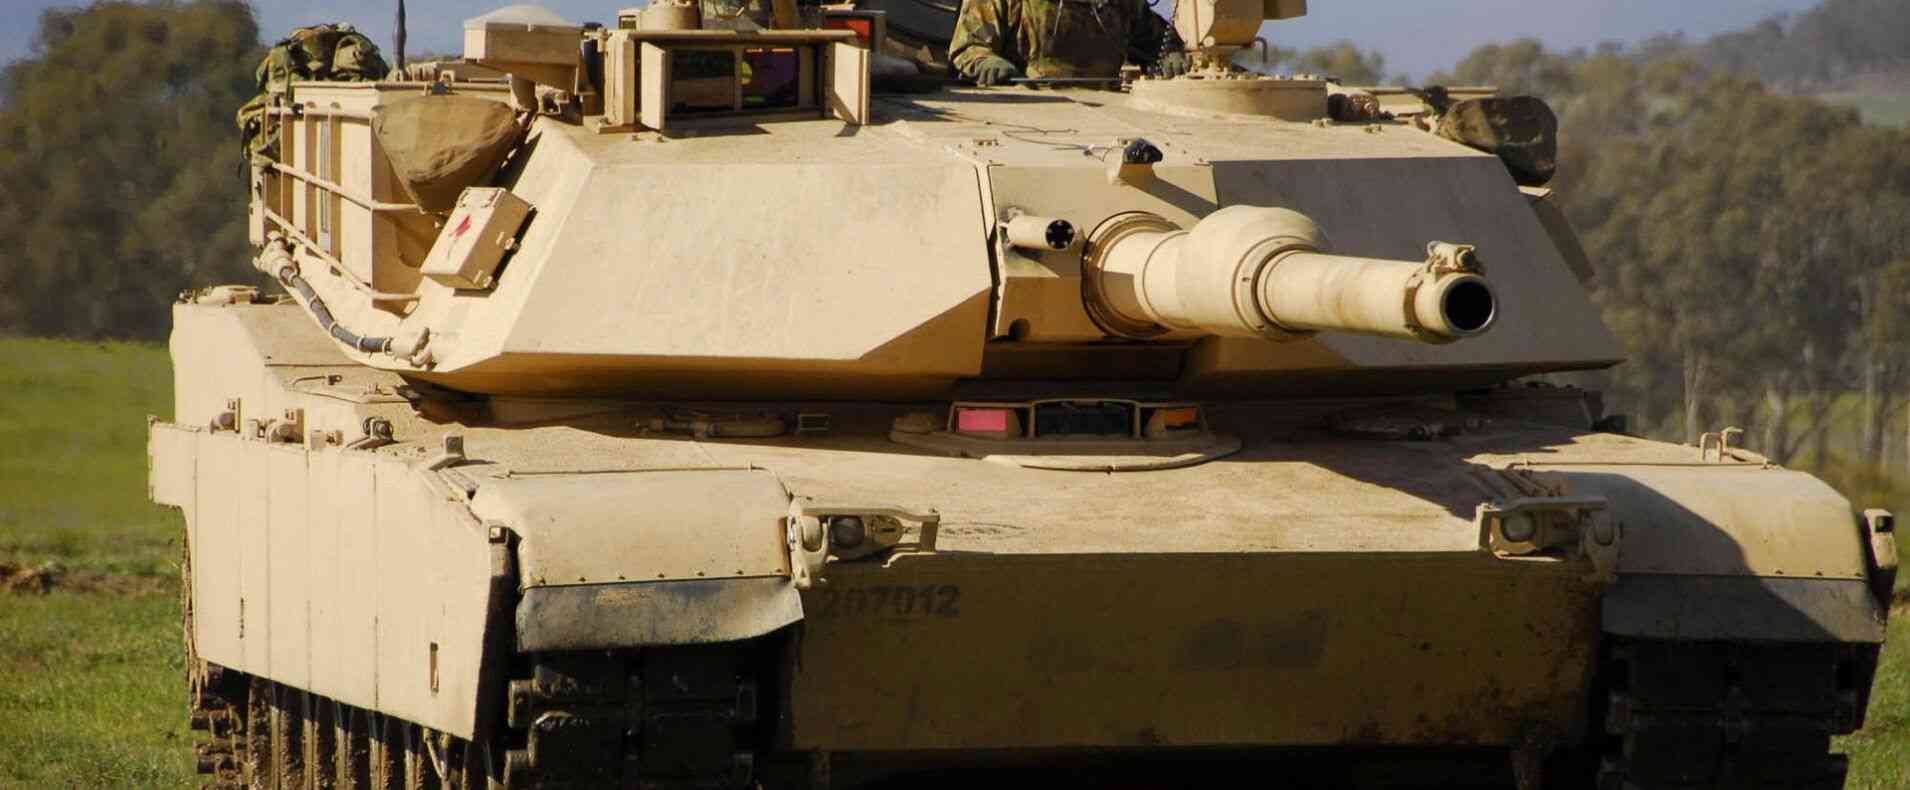 Вся техдокументация по танку Abrams была получена разведкой ещё во времена СССР 